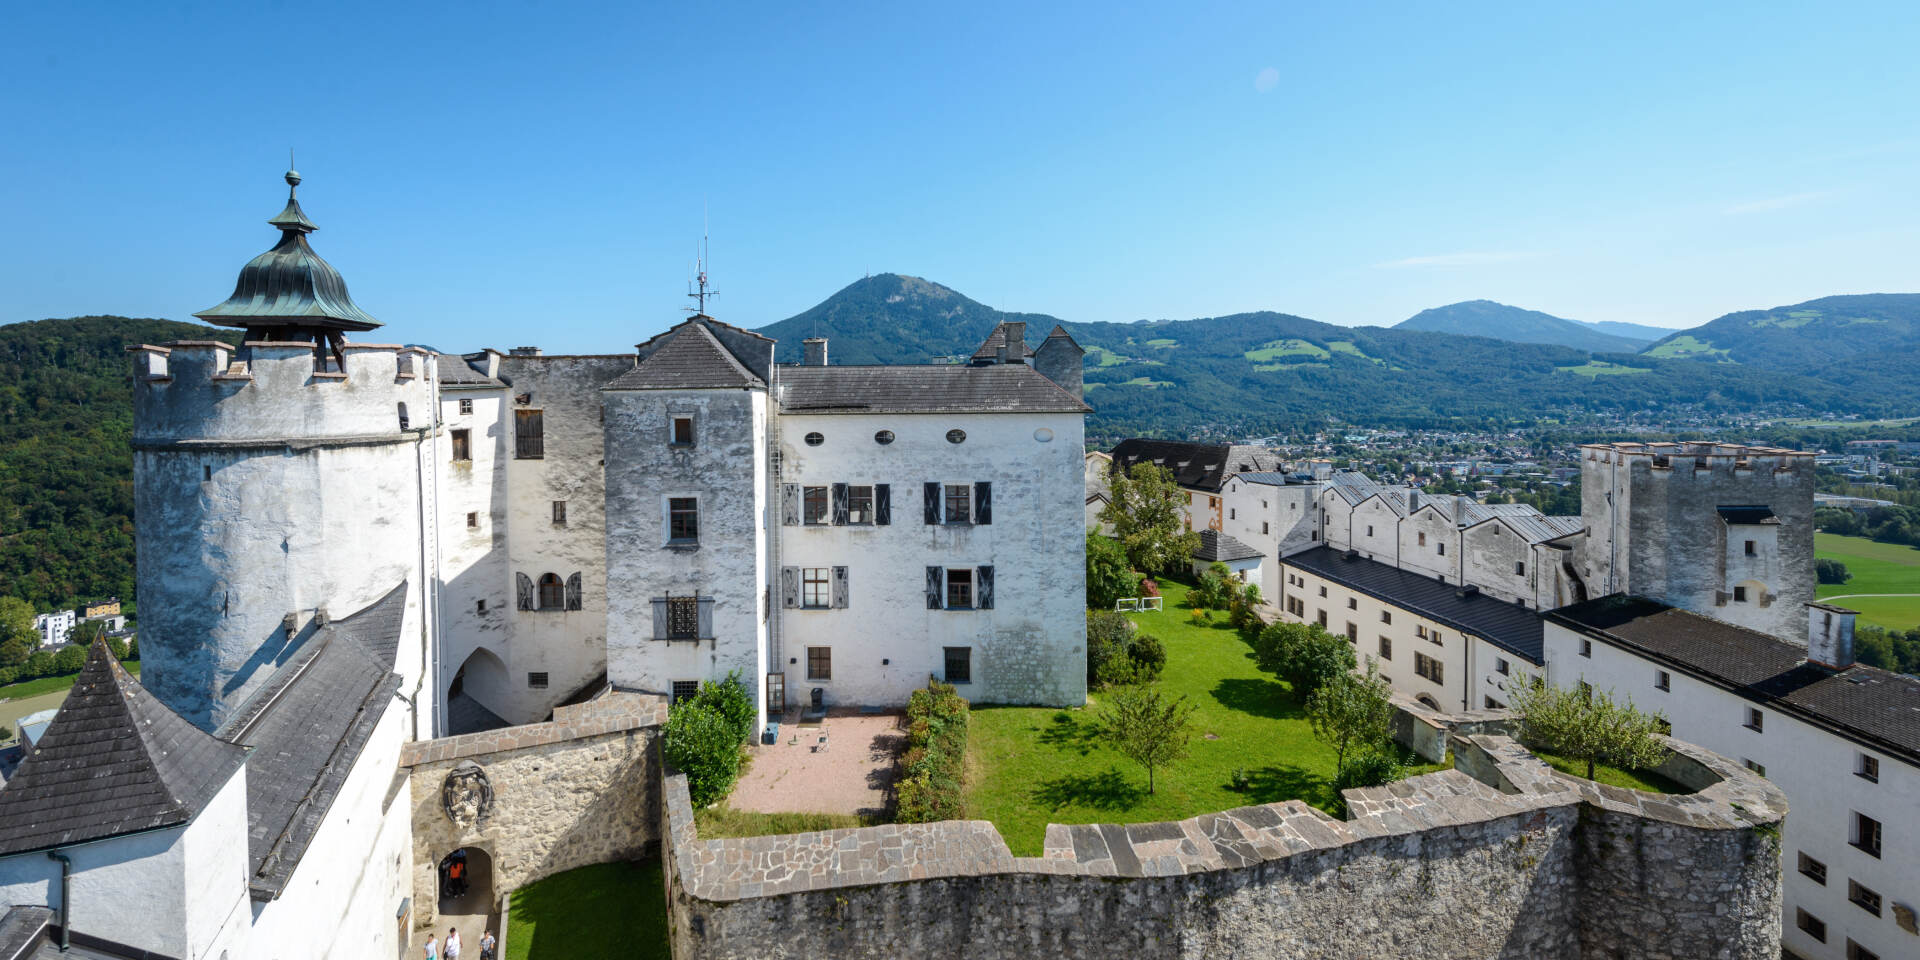 Blick vom Turm der Festung Hohensalzburg © Tourismus Salzburg GmbH